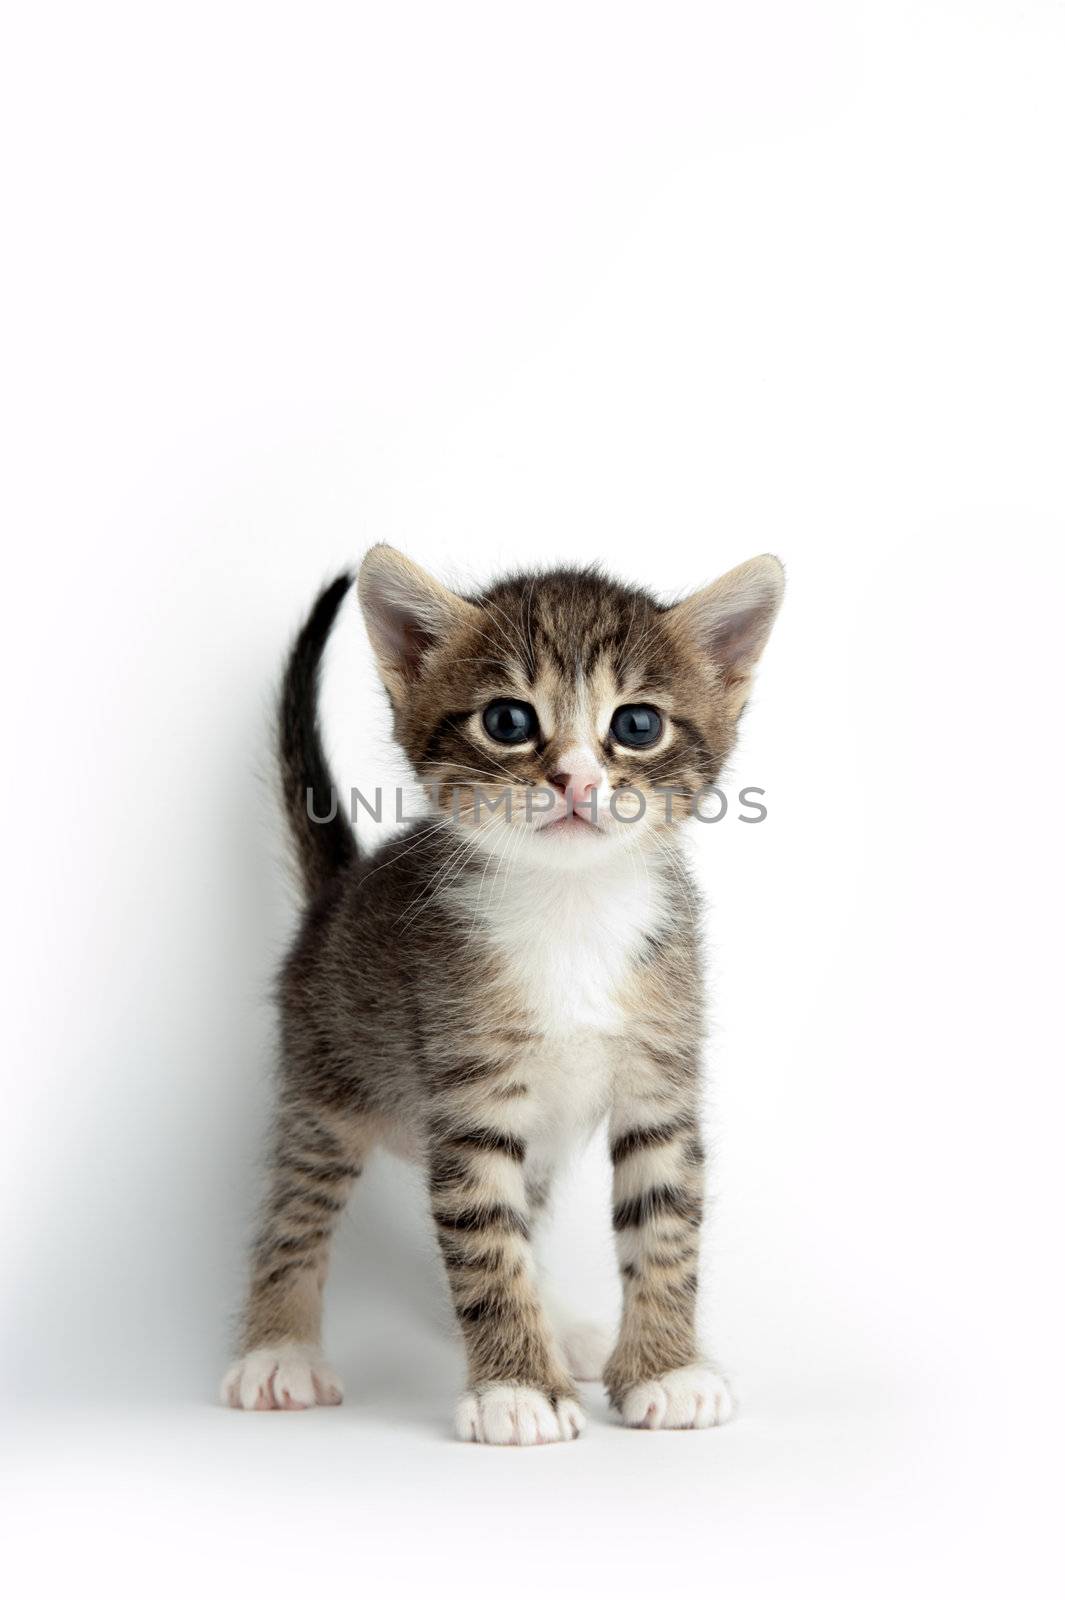 Little kitten by velkol